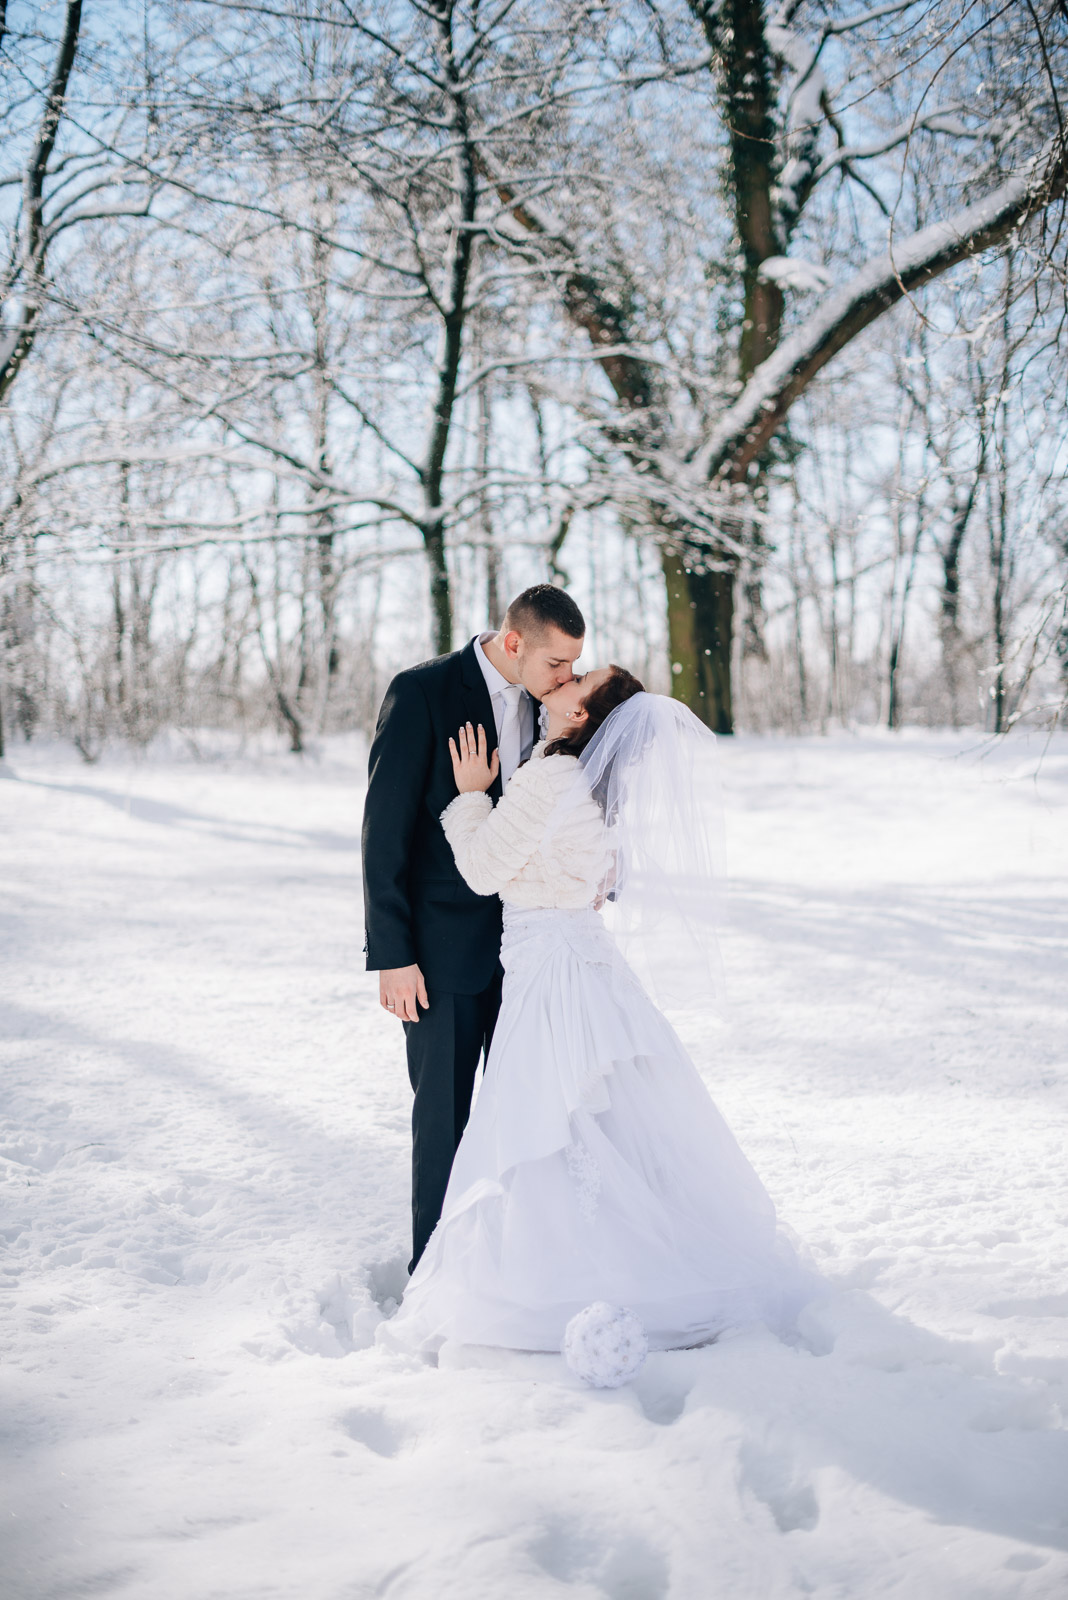 svadba svadobne fotenie fotograf nitra bratislava trencin banska bystrica bab sneh zima v zimepriroda portret portrety